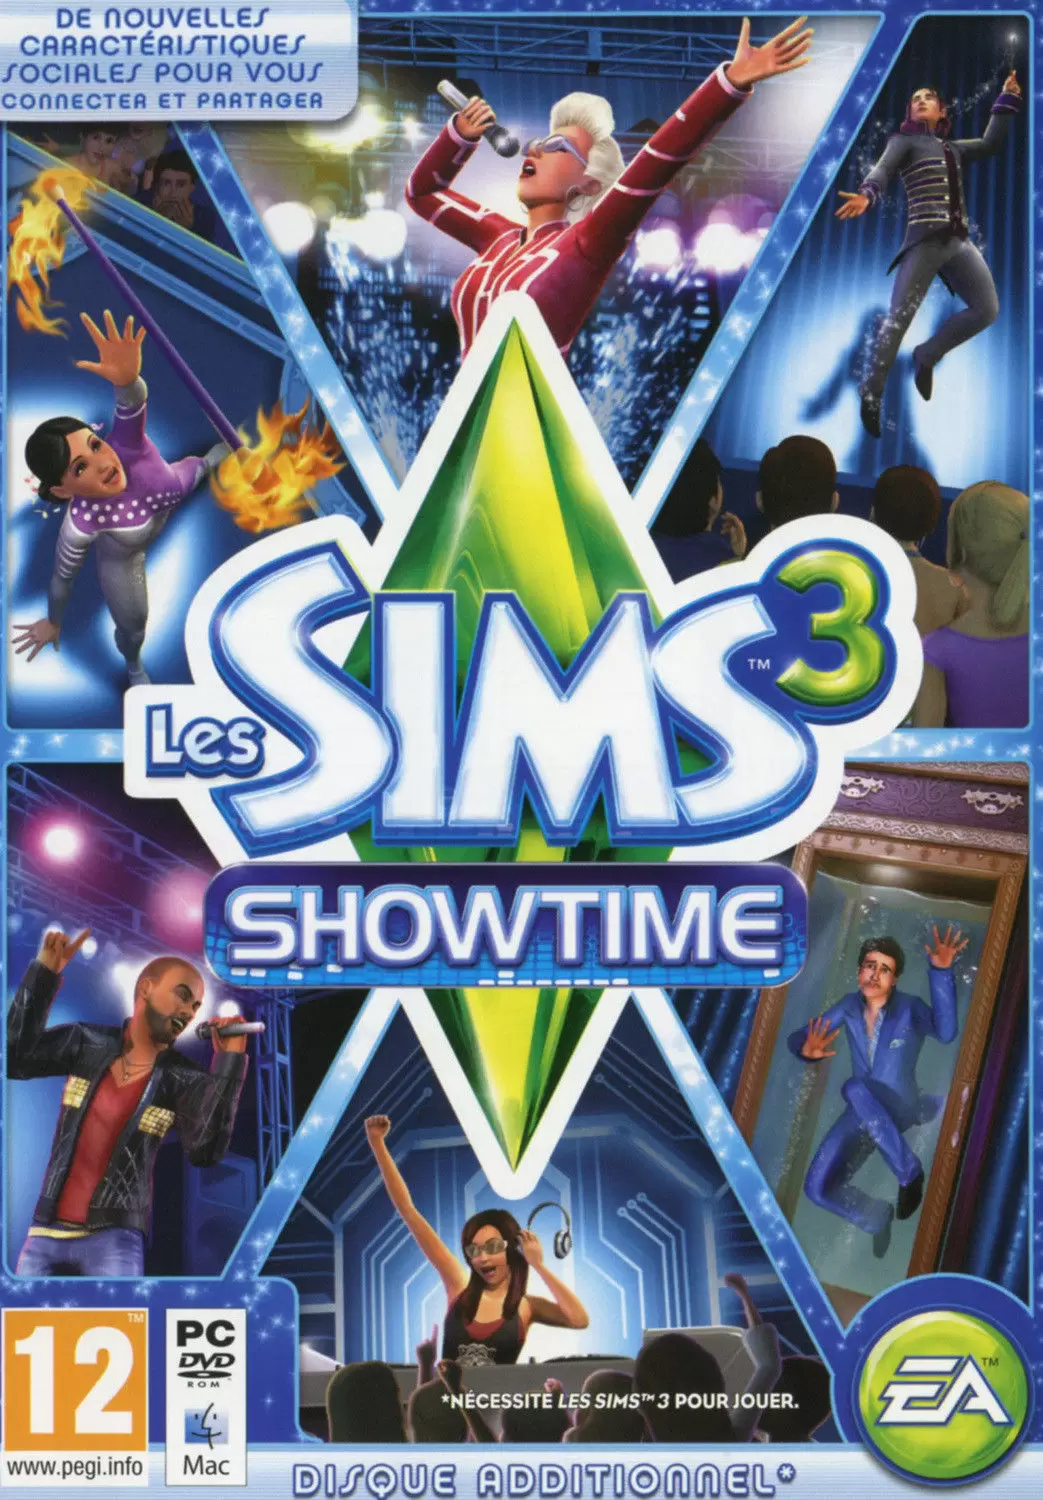 PC Games - Les Sims 3 : Showtime